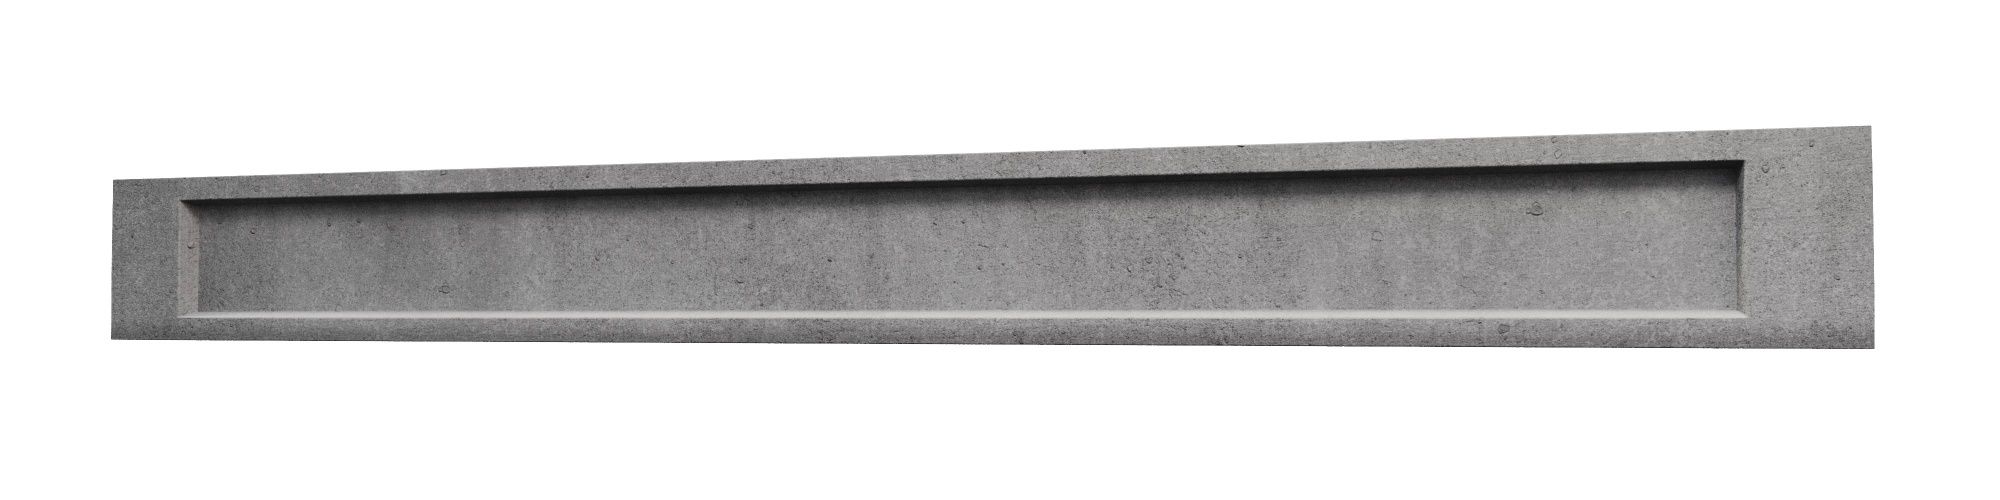 Podmurówka betonowa pod ceownik  prefabrykowana  25cm płyta gładka